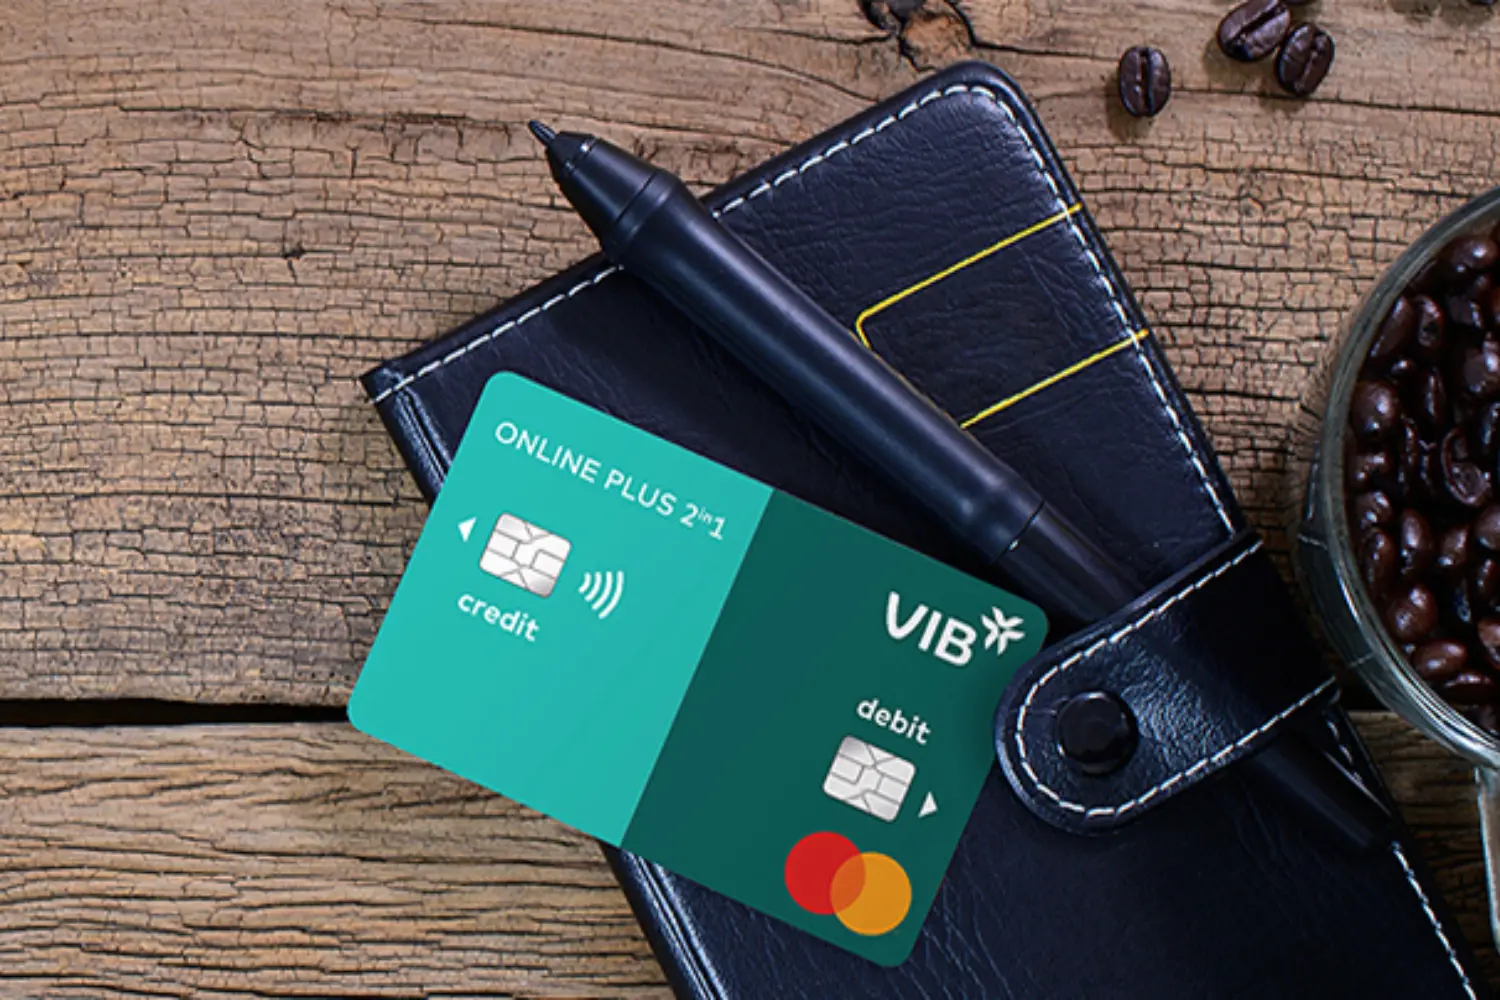 Hướng dẫn rút tiền mặt thẻ tín dụng VIB chi tiết